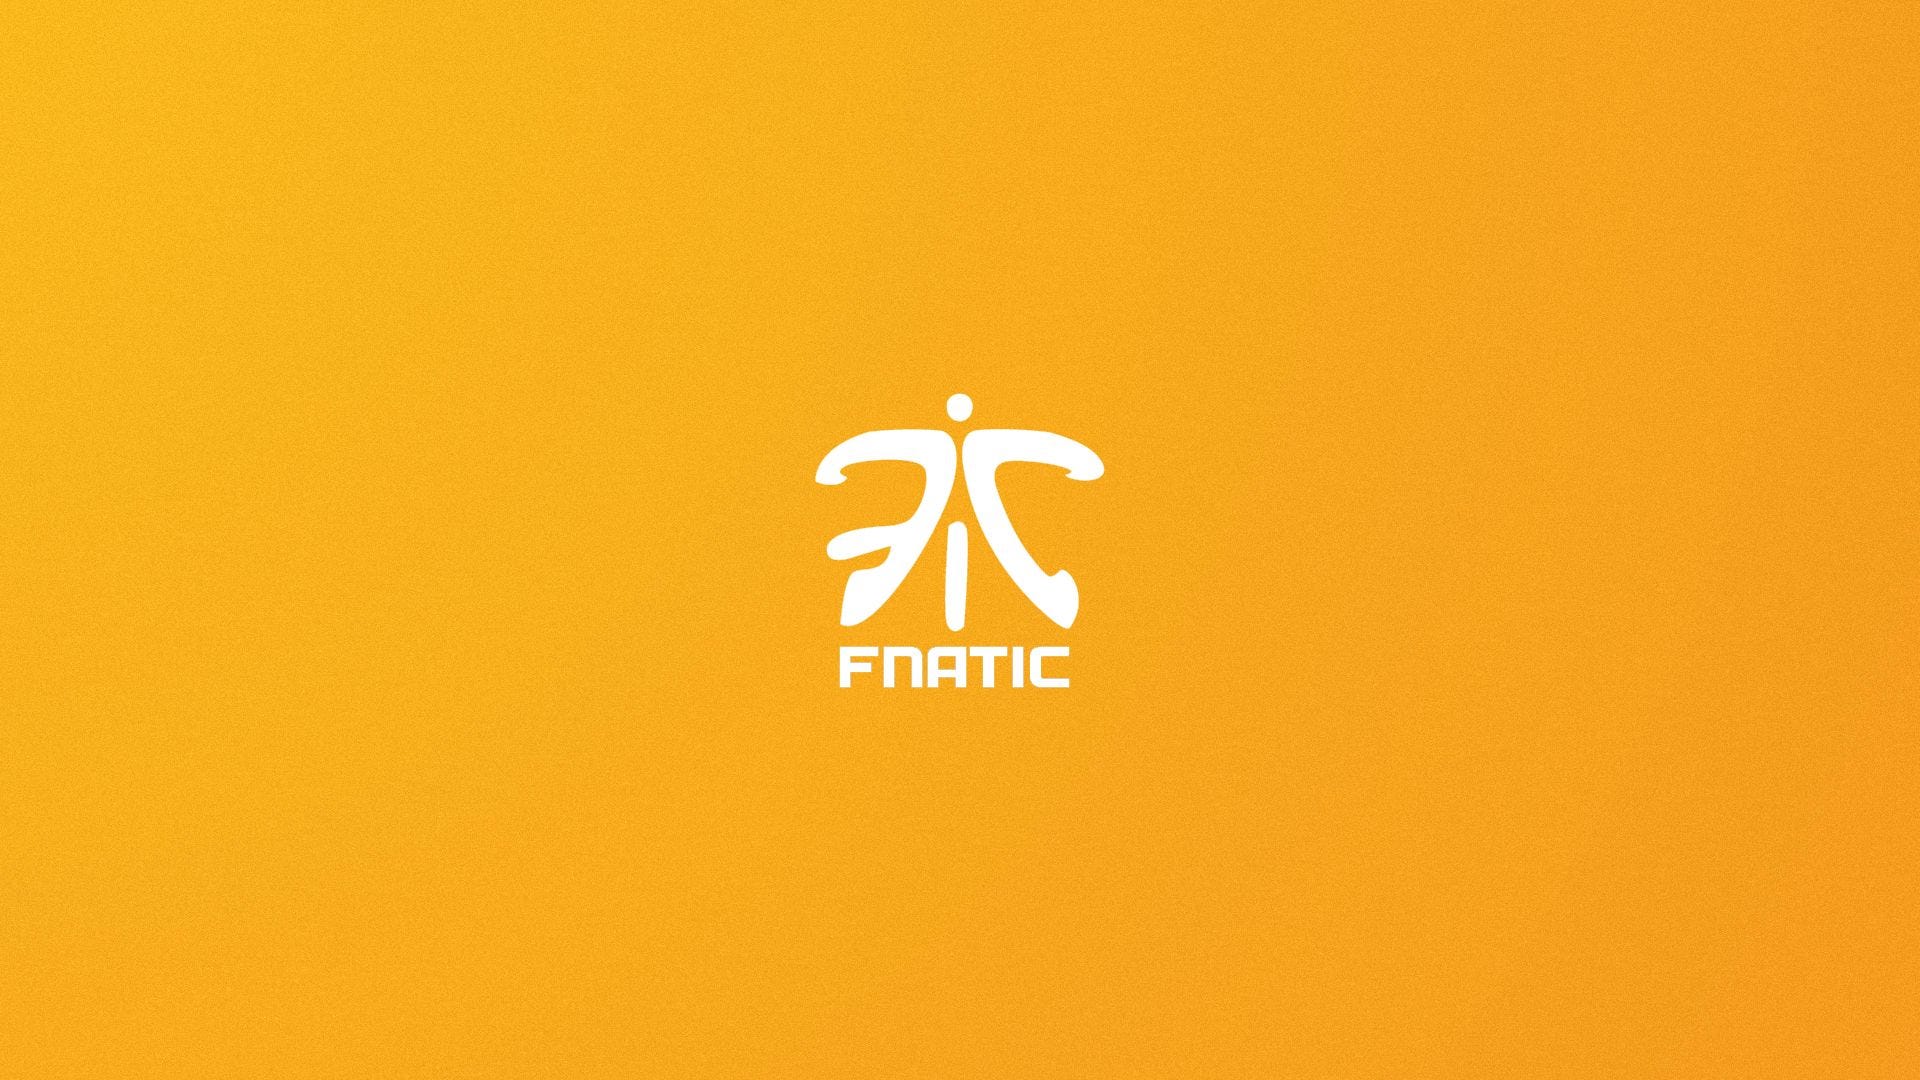 Fnatic, o monstro do branding nos esports, by Pedro Tonelo